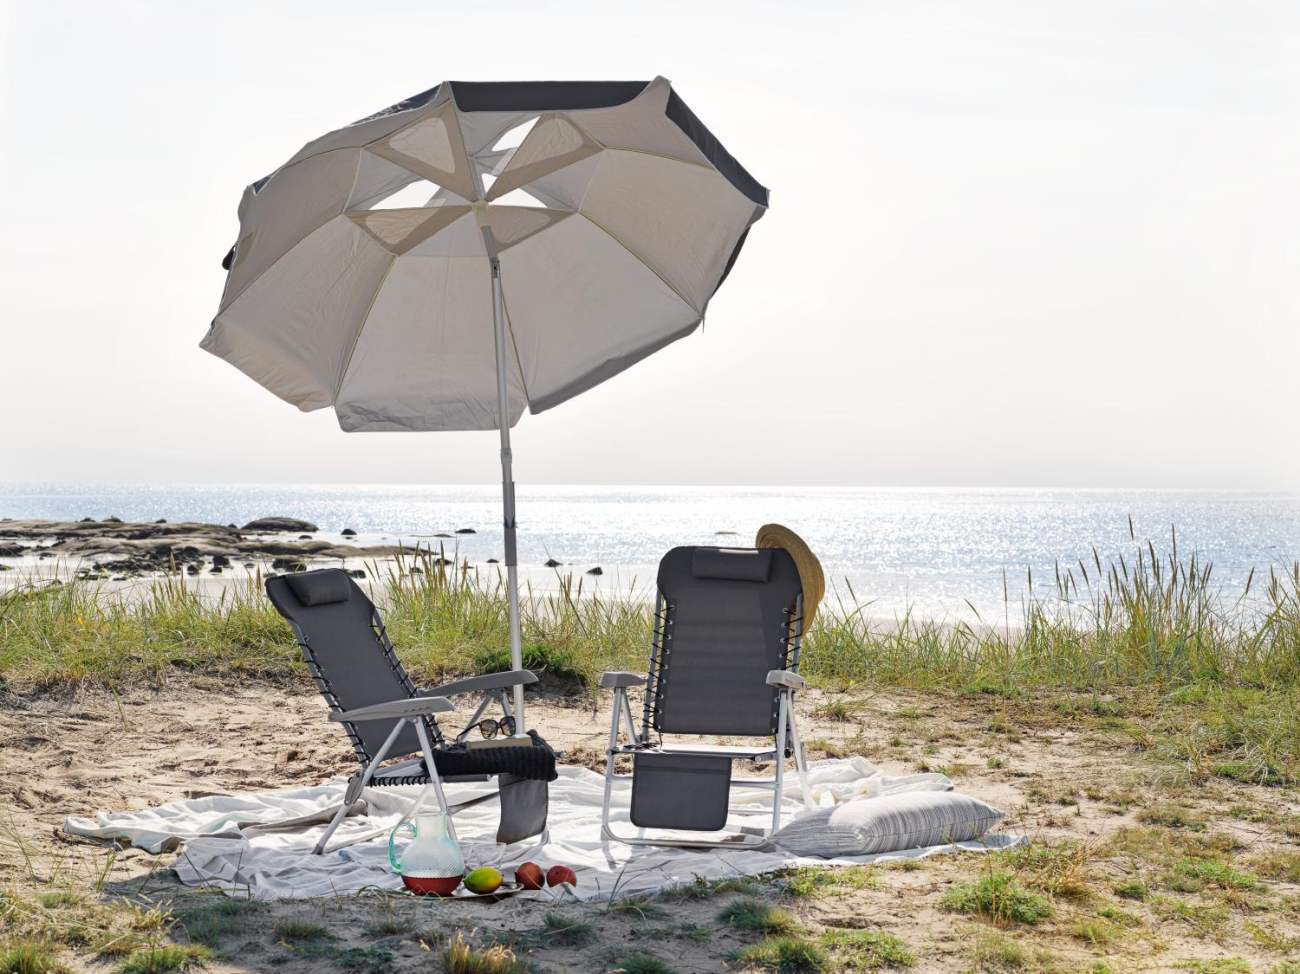 Der Sonnenschirm Beach überzeugt mit seinem modernen Design. Gefertigt wurde er aus Kunstfasern, welcher einen grauen Farbton besitzt. Das Gestell ist aus Metall und hat eine silberne Farbe. Der Schirm hat einen Durchmesser von 180 cm.